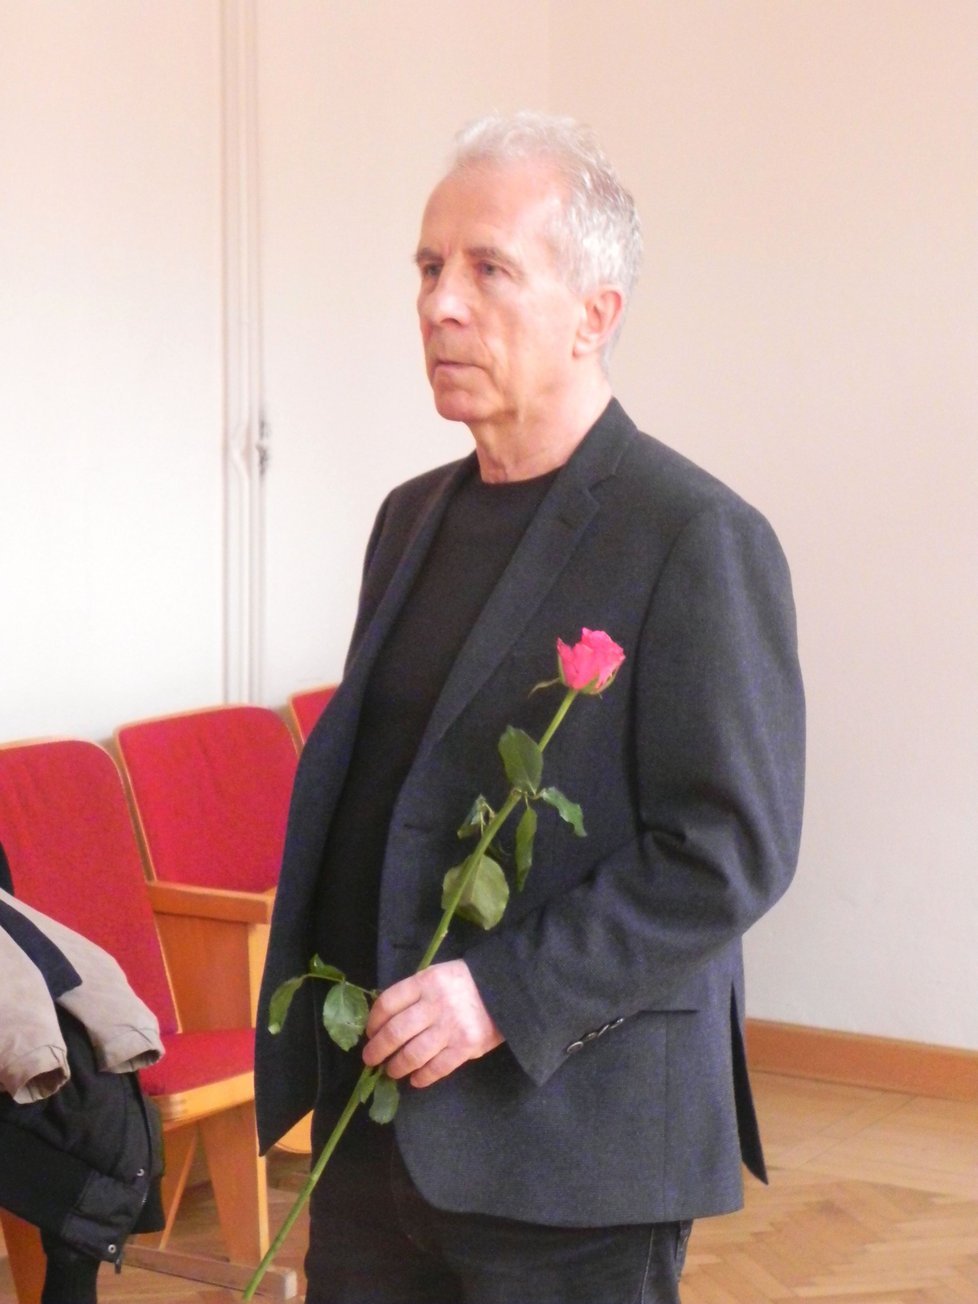 František Divoký (71) chtěl své obžalovaného ženě předat růži při MDŽ. Eskorta to nedovolila. Soud navíc zamítl návrh na propuštění jeho choti z vazby na kauci 5 milionů.